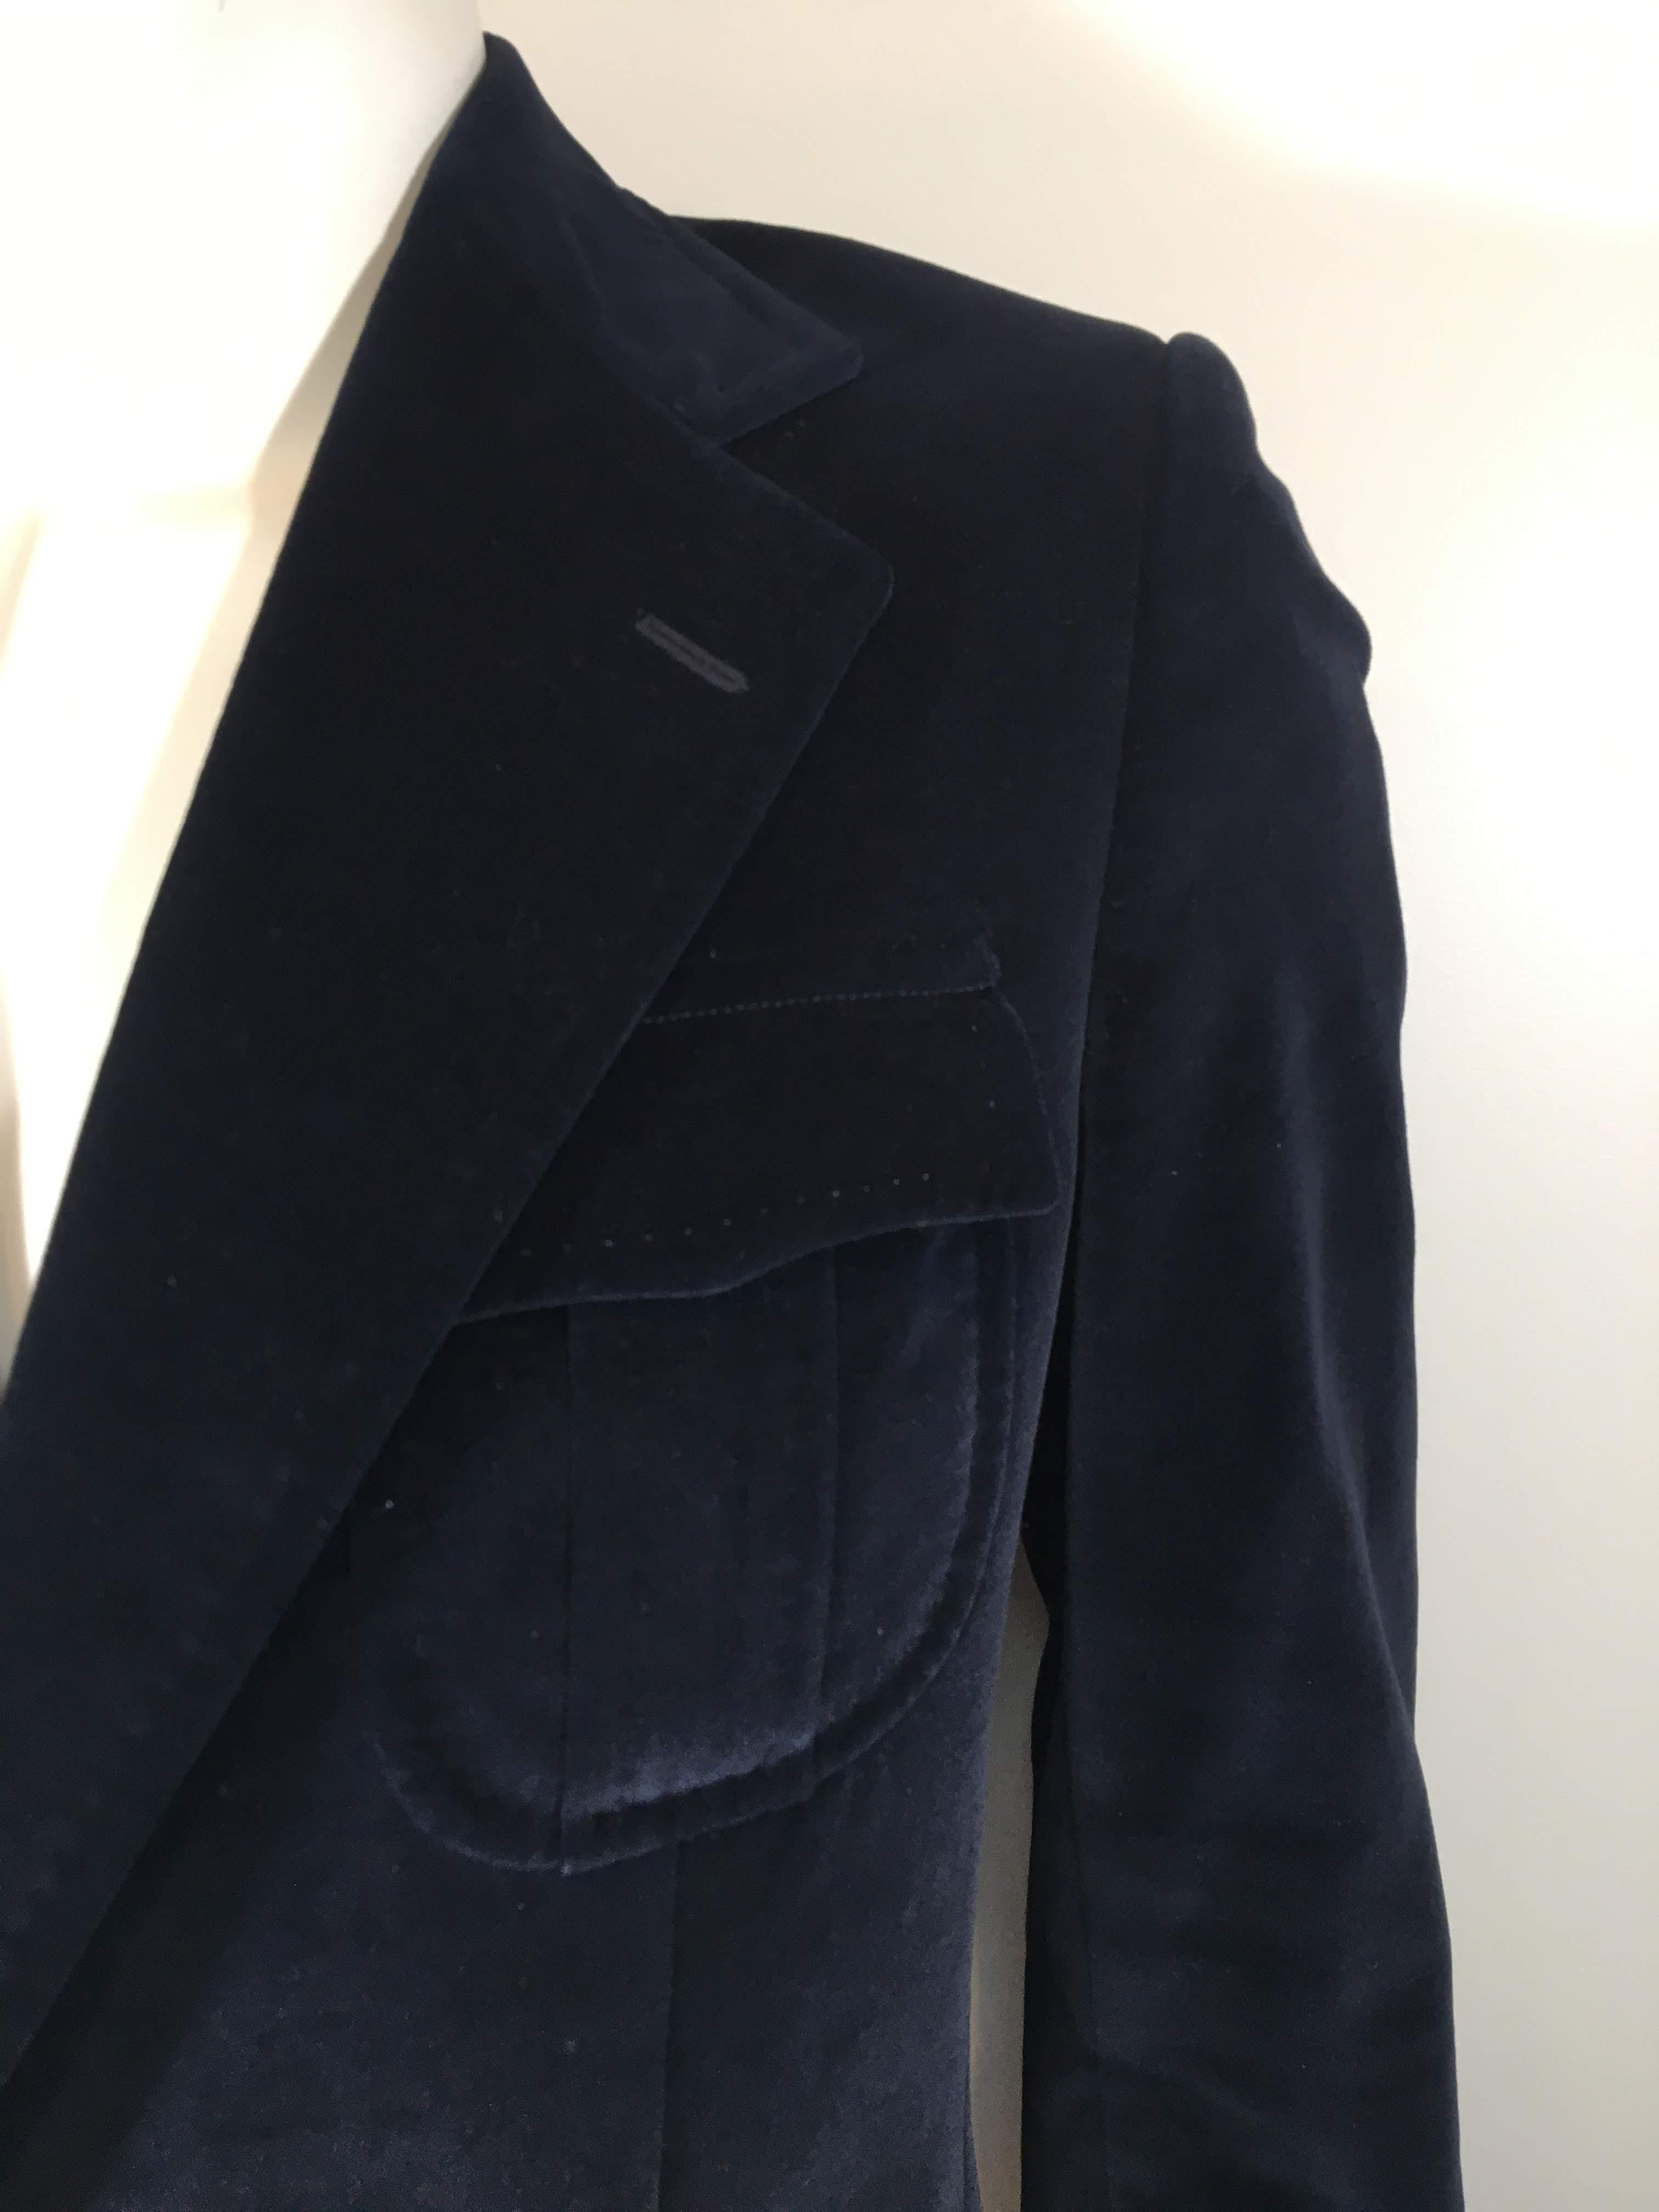 Yves Saint Laurent velvet navy blazer with 2 buttons.